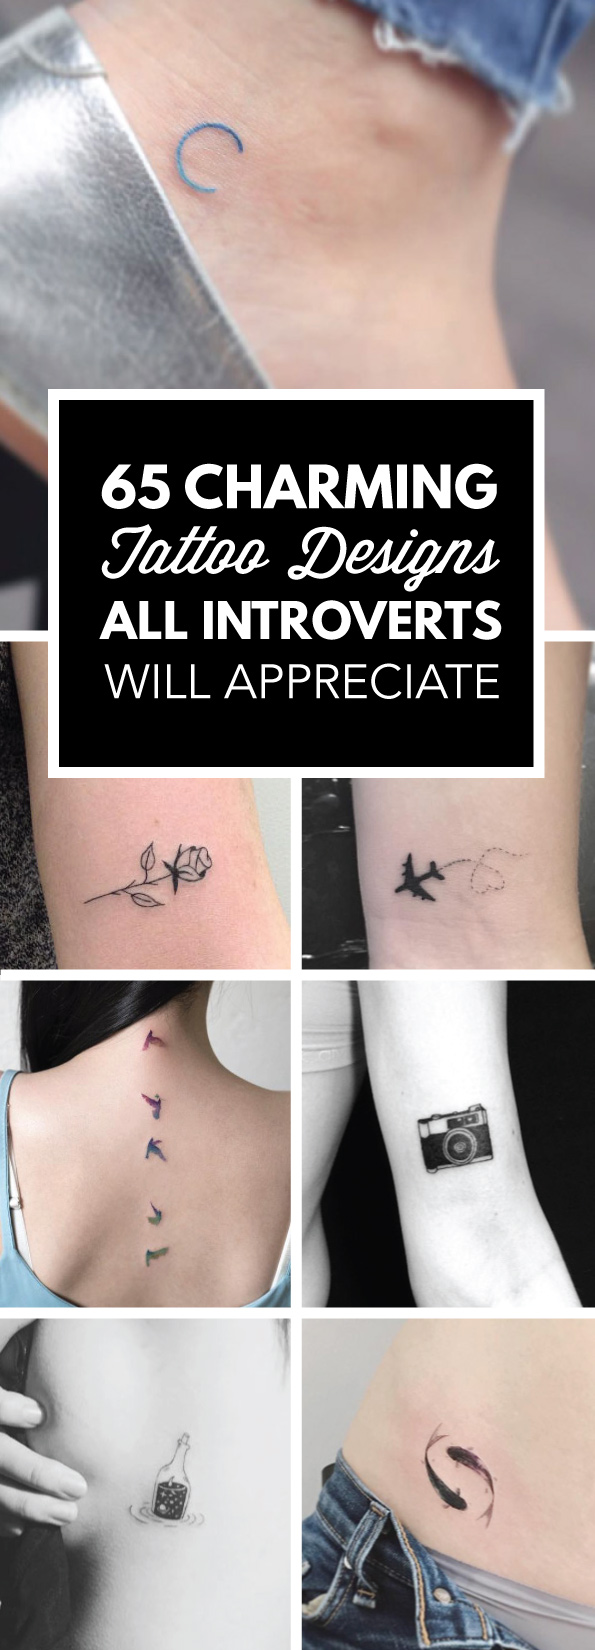 65 Charming Tattoo Designs All Introverts Will Appreciate - TattooBlend